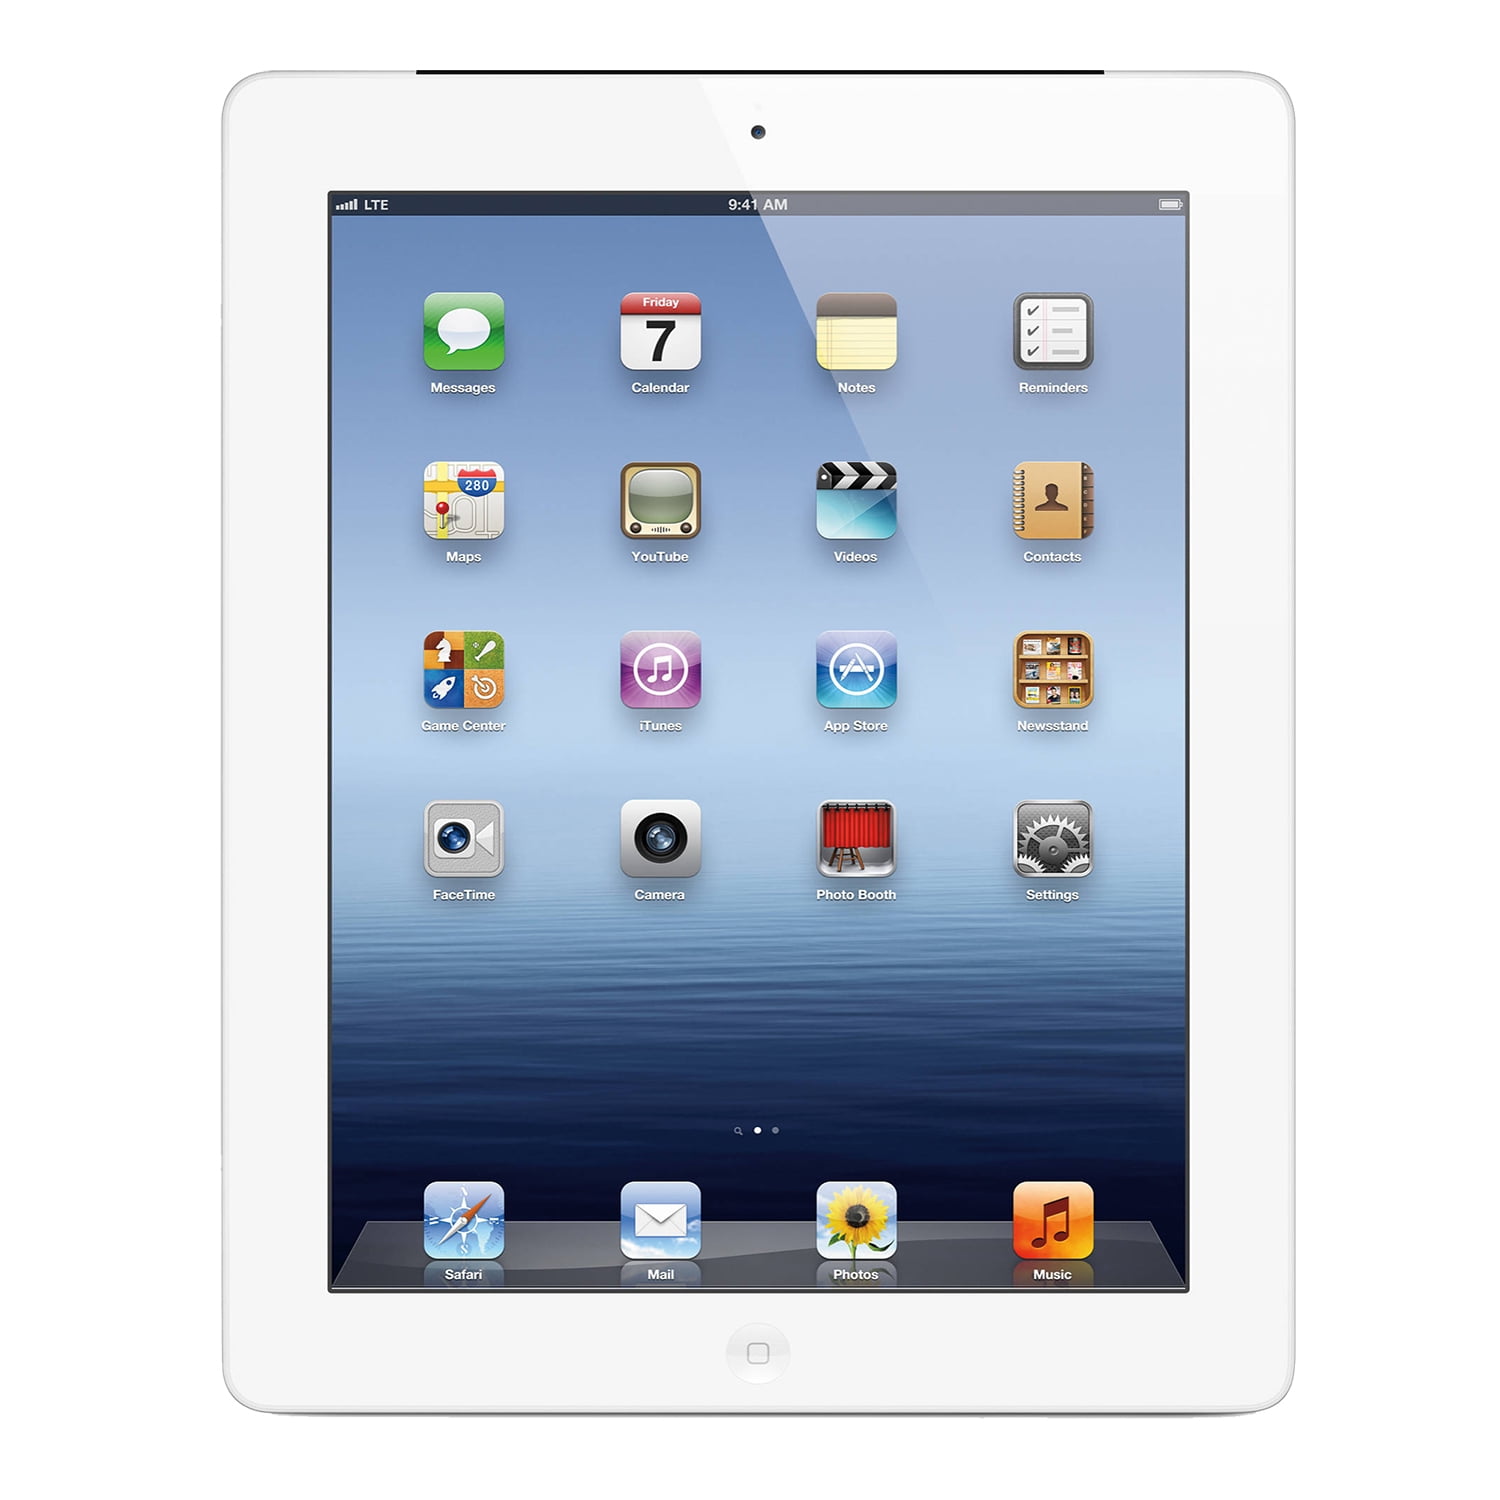 Apple iPad mini 1st Generation 7.9" 16GB Wi-Fi Tablet - Space Gray(Refurbished) - Walmart.com ...